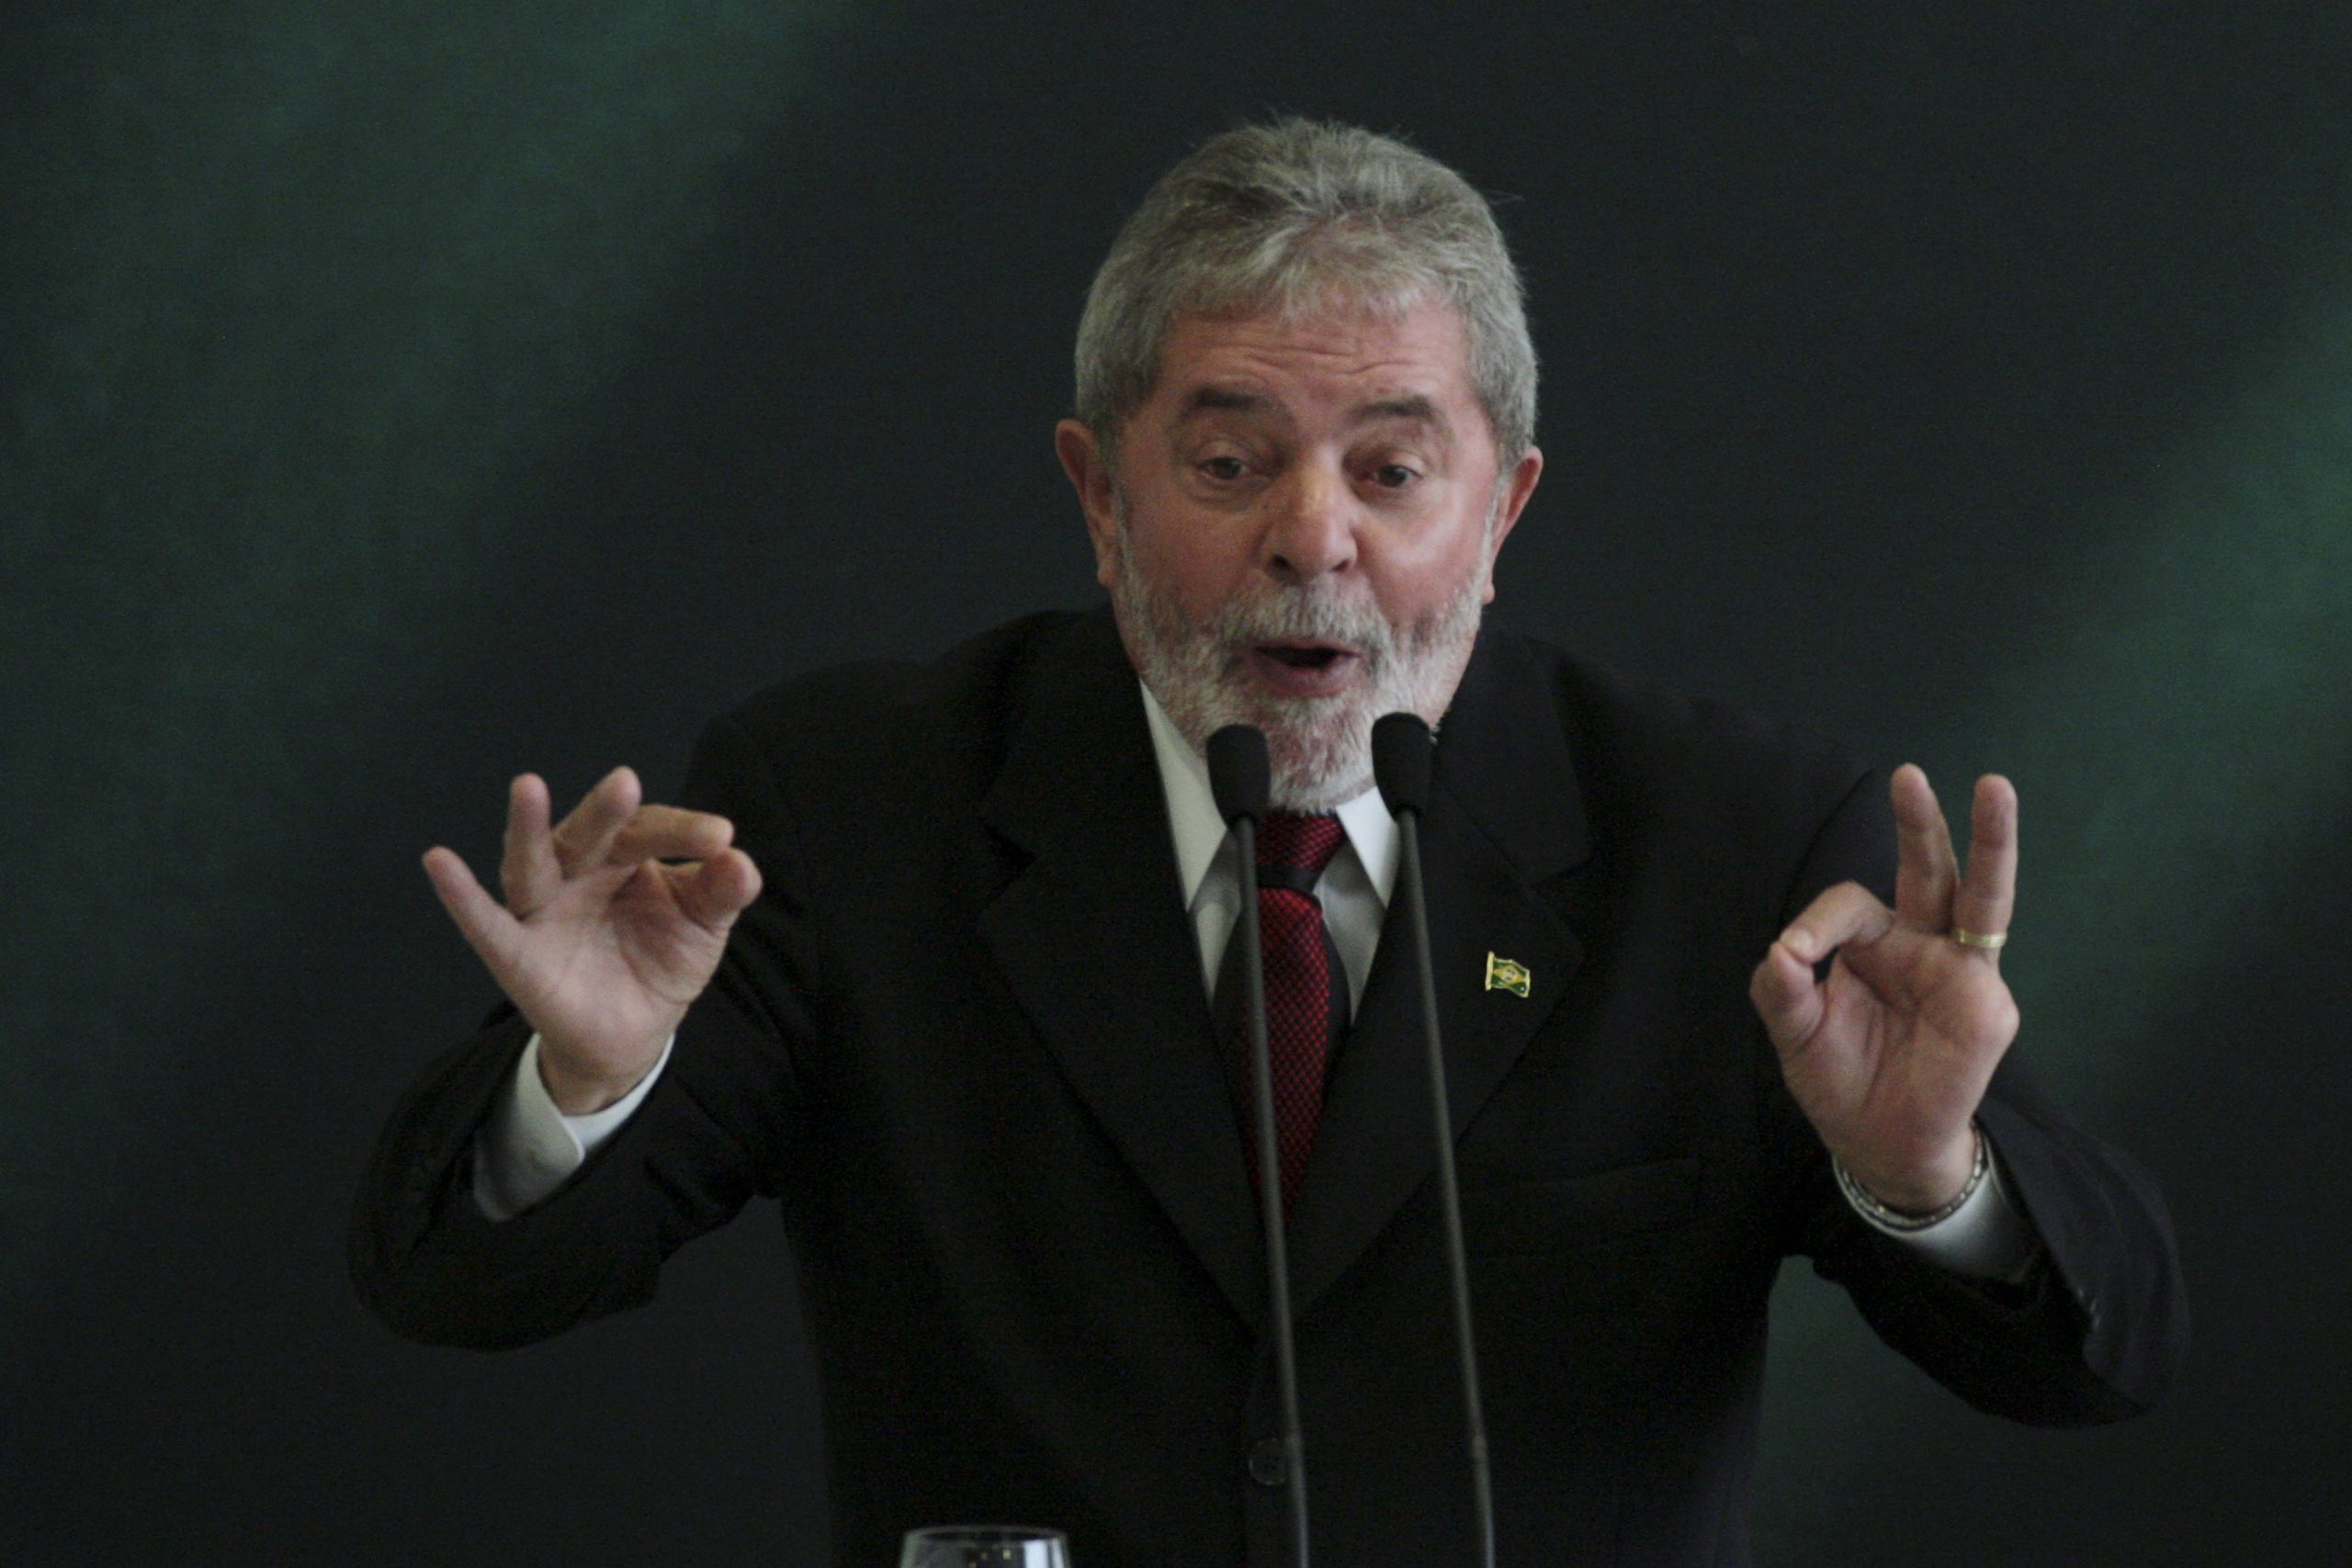 Brasilia, il presidente brasiliano Luiz Inacio Lula da Silva e il presidente eletto Dilma Rousseff (LaPresse)